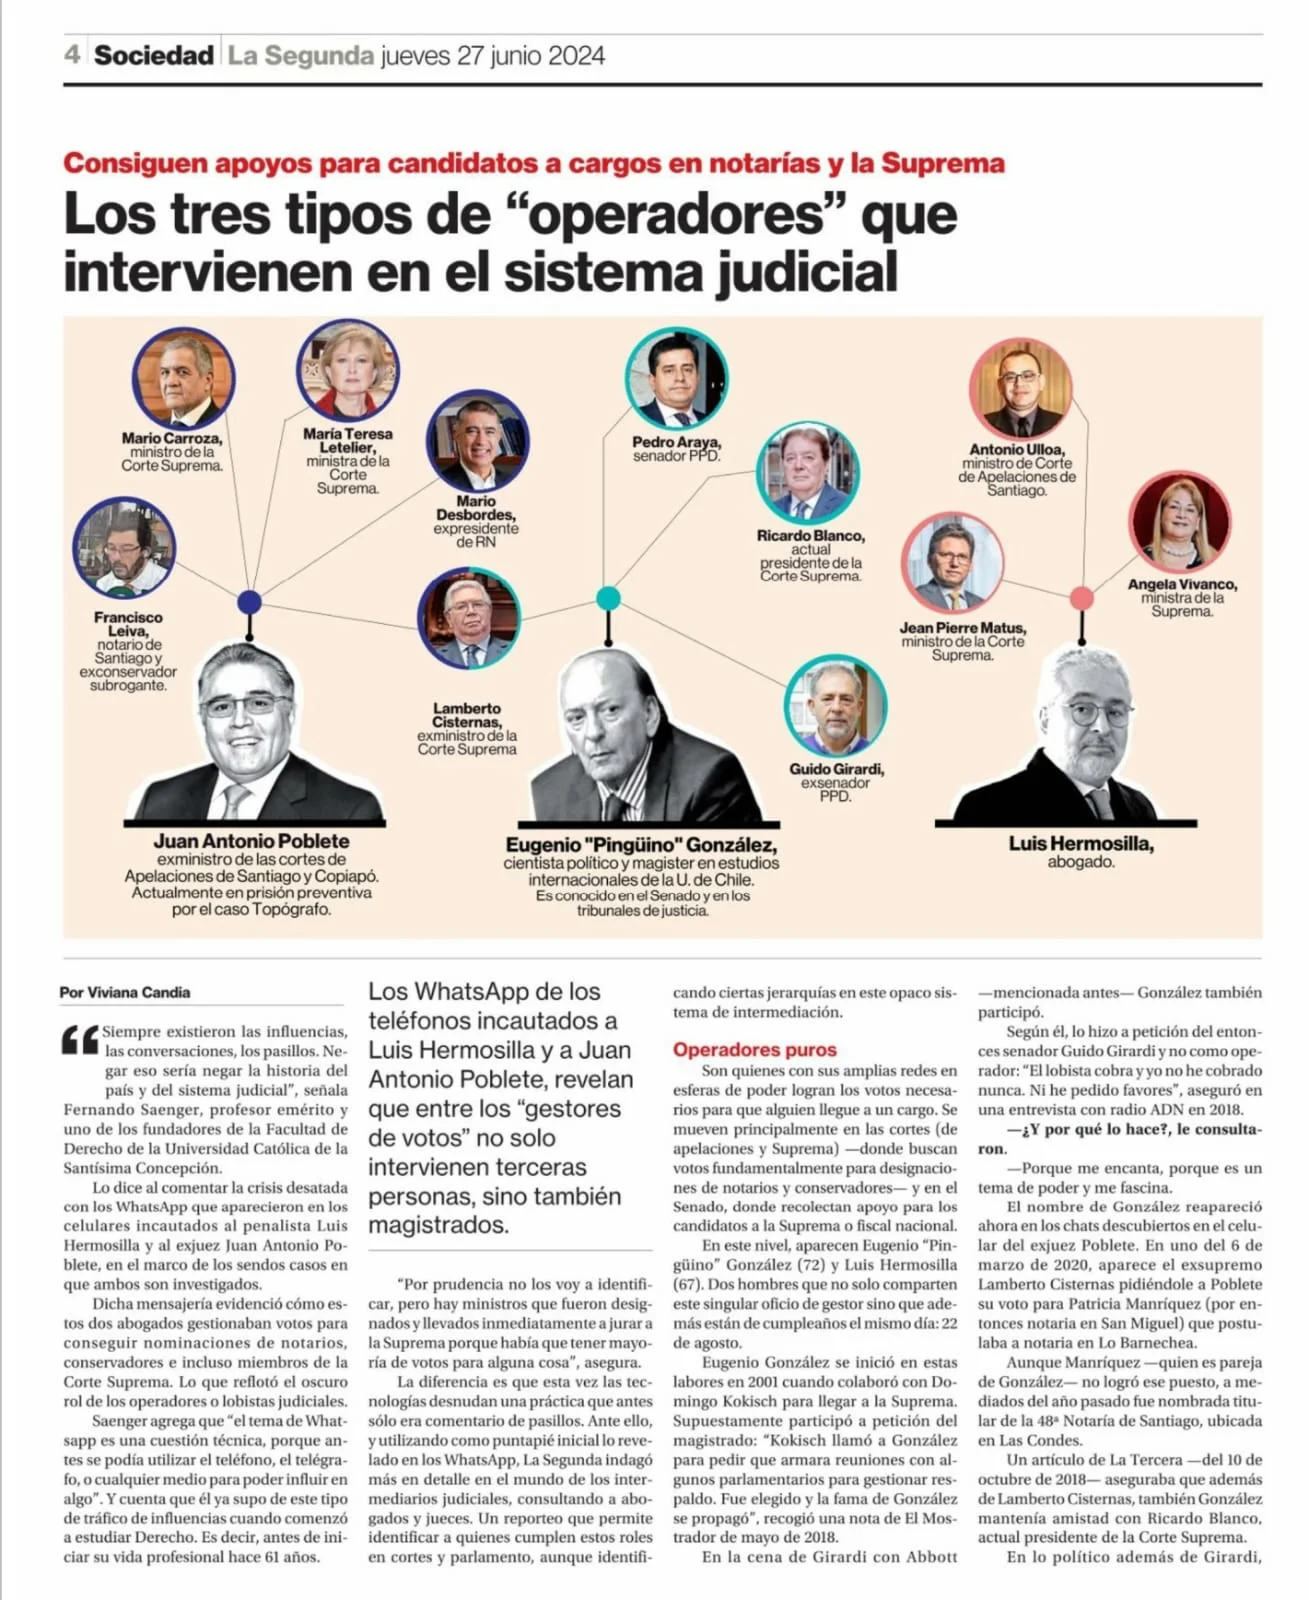 La Segunda: Los tres tipos de “operadores” que intervienen en el sistema judicial chileno